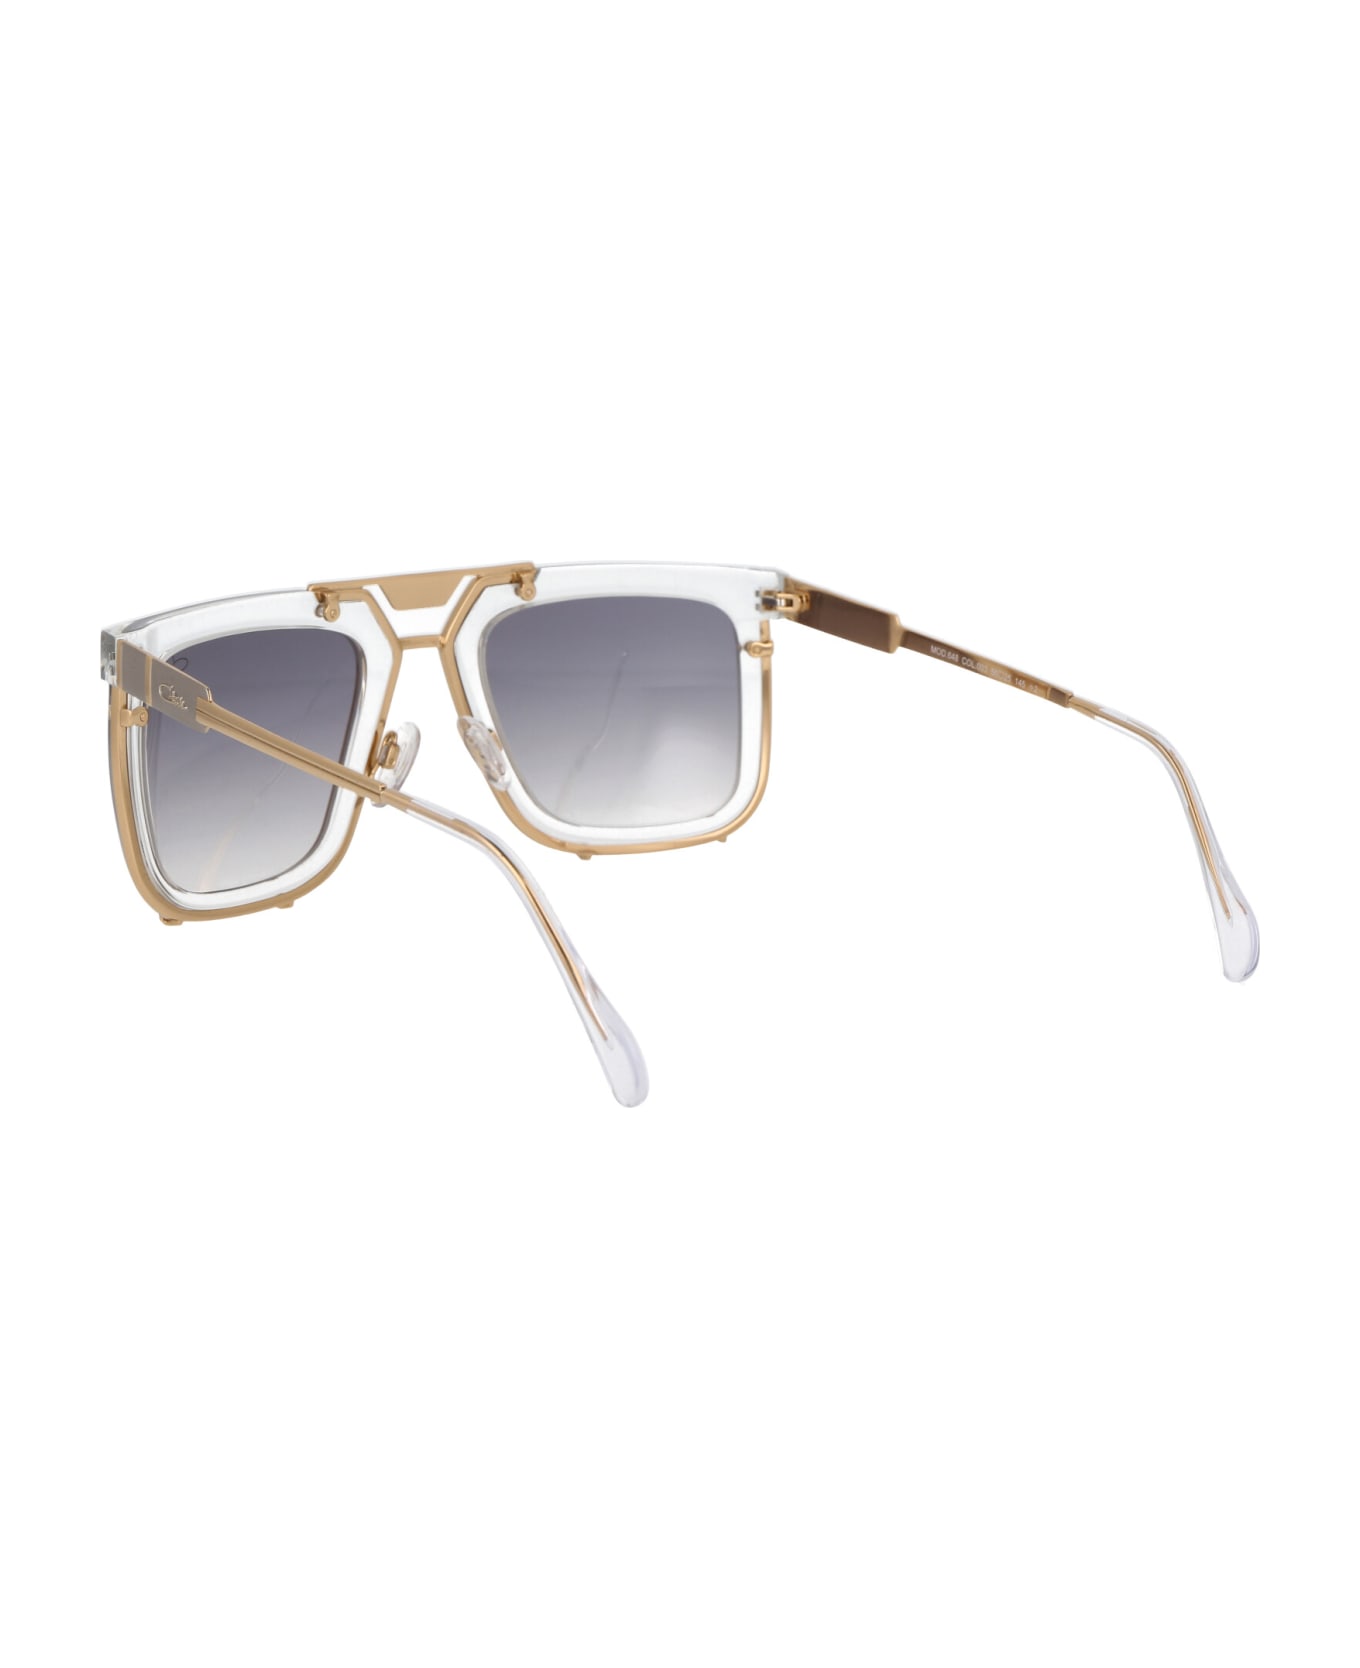 Cazal Mod. 648 Sunglasses - 003 CRYSTAL